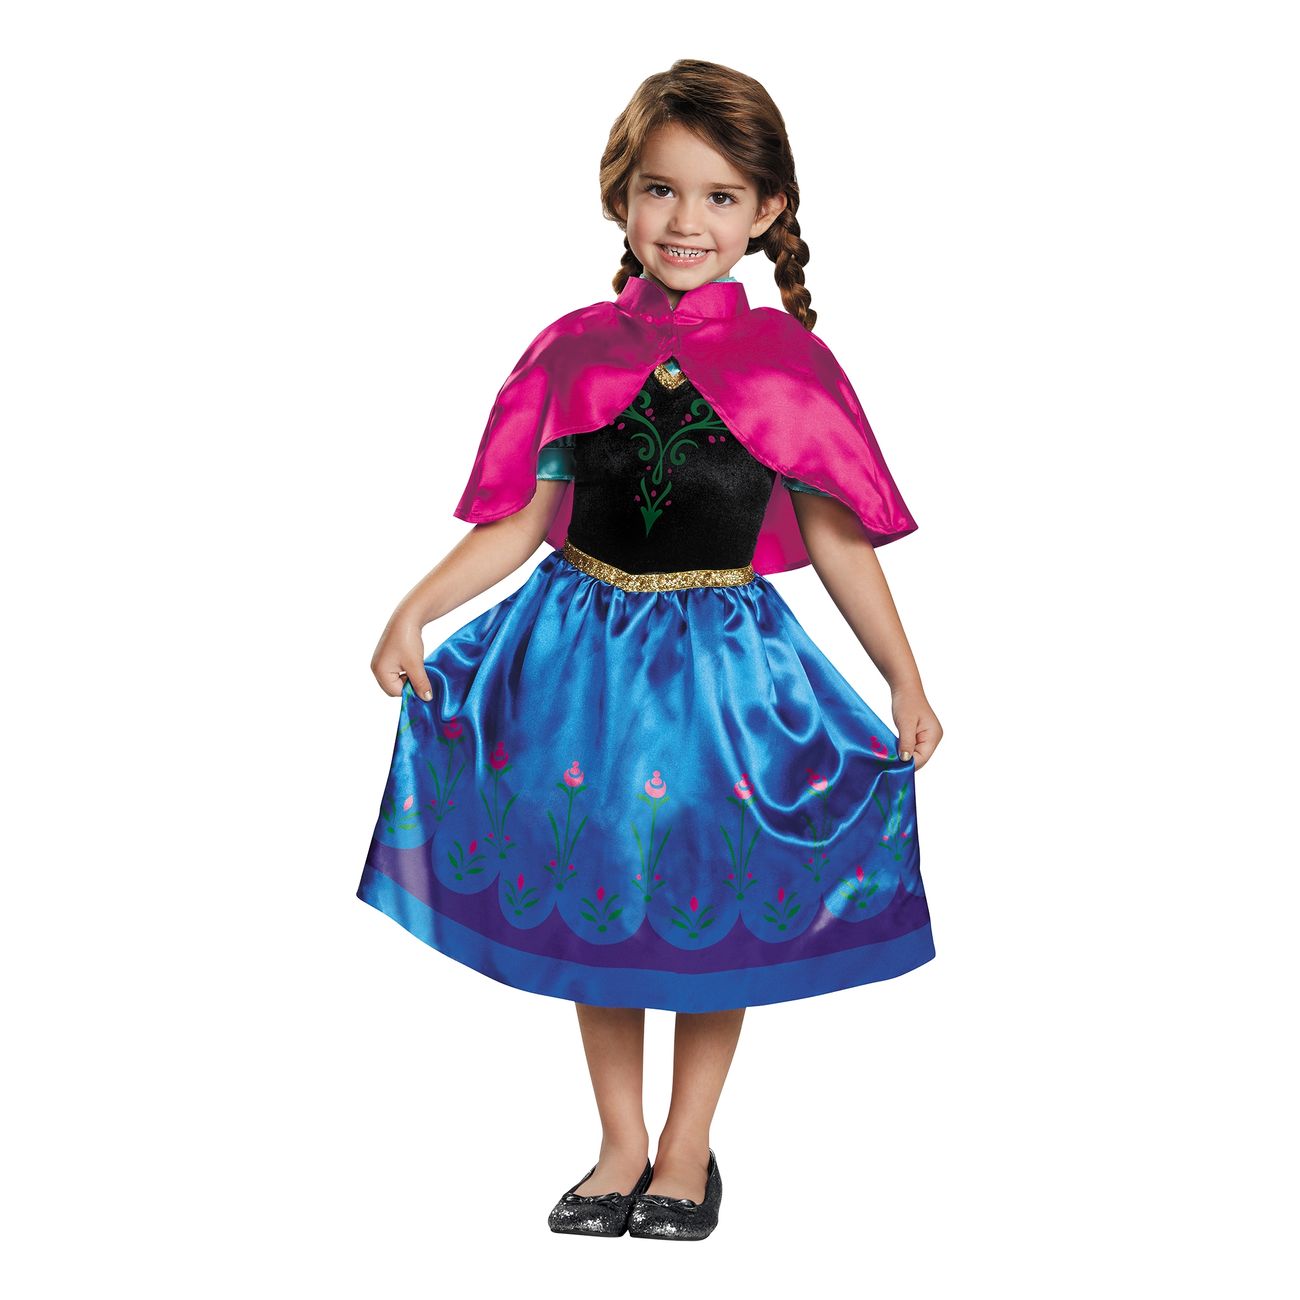 Frozen Anna børnekostume - Disney prinsesse kostume til børn